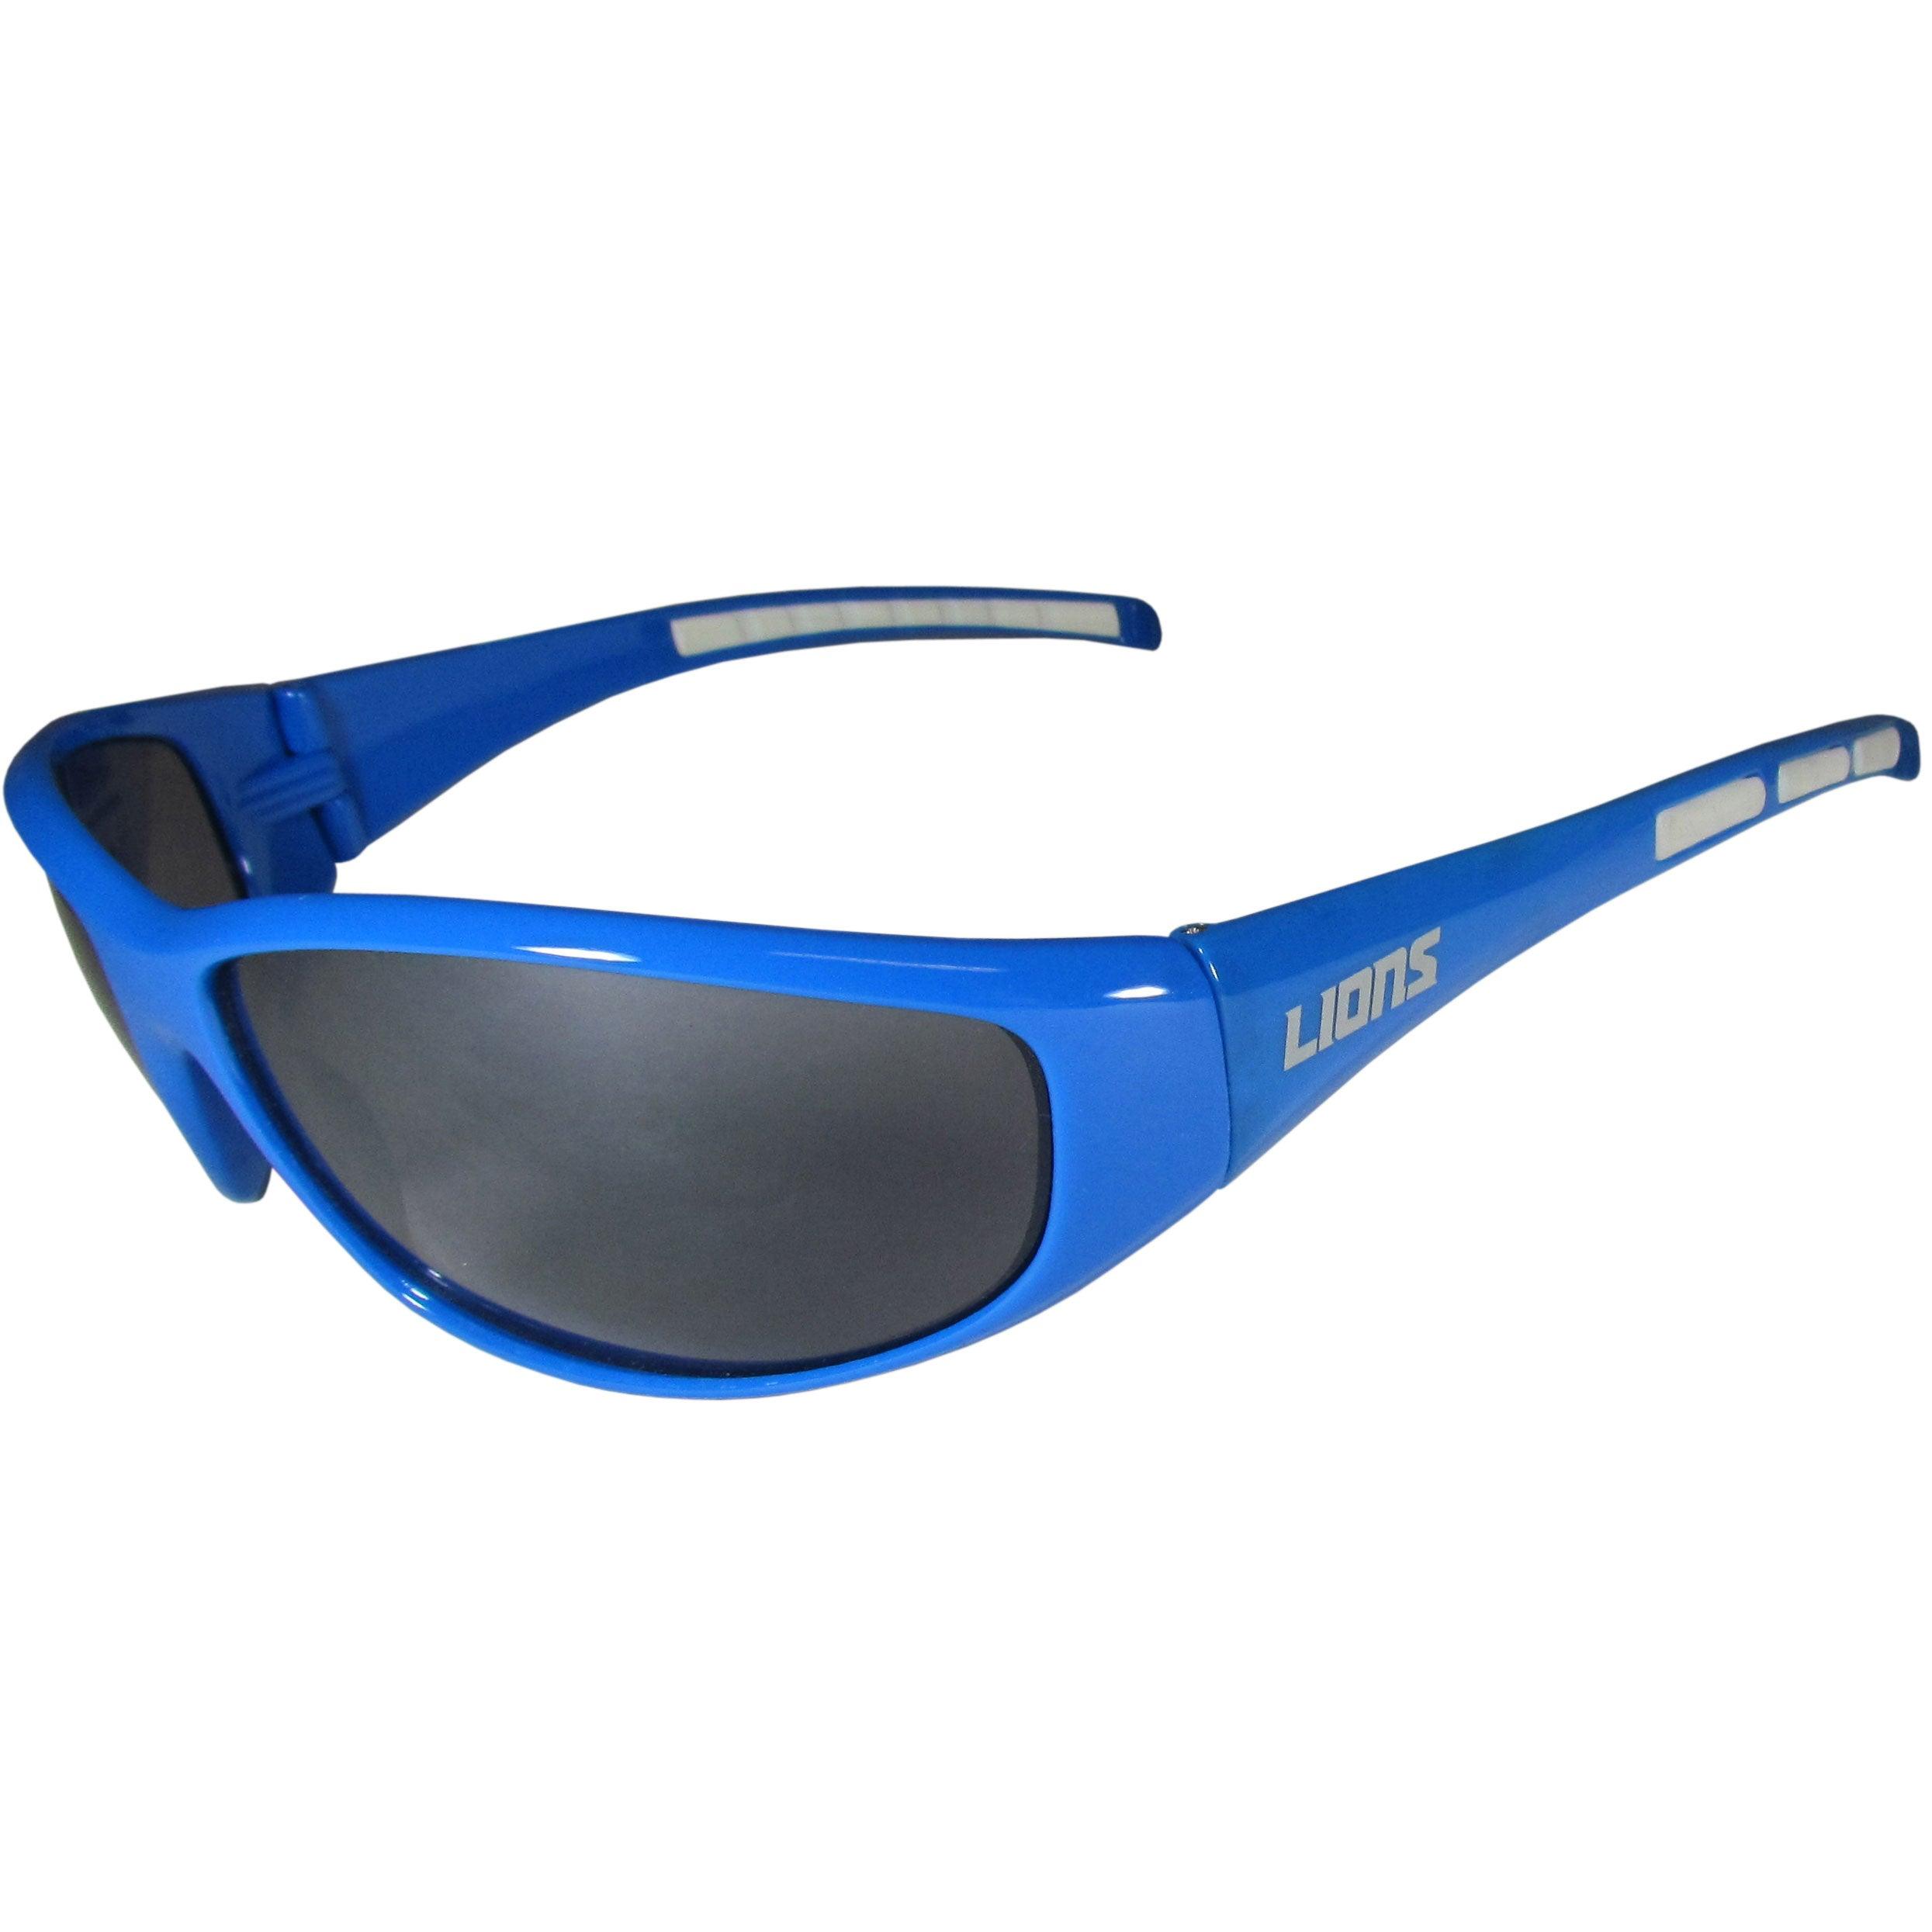 Detroit Lions Wrap Sunglasses - Flyclothing LLC